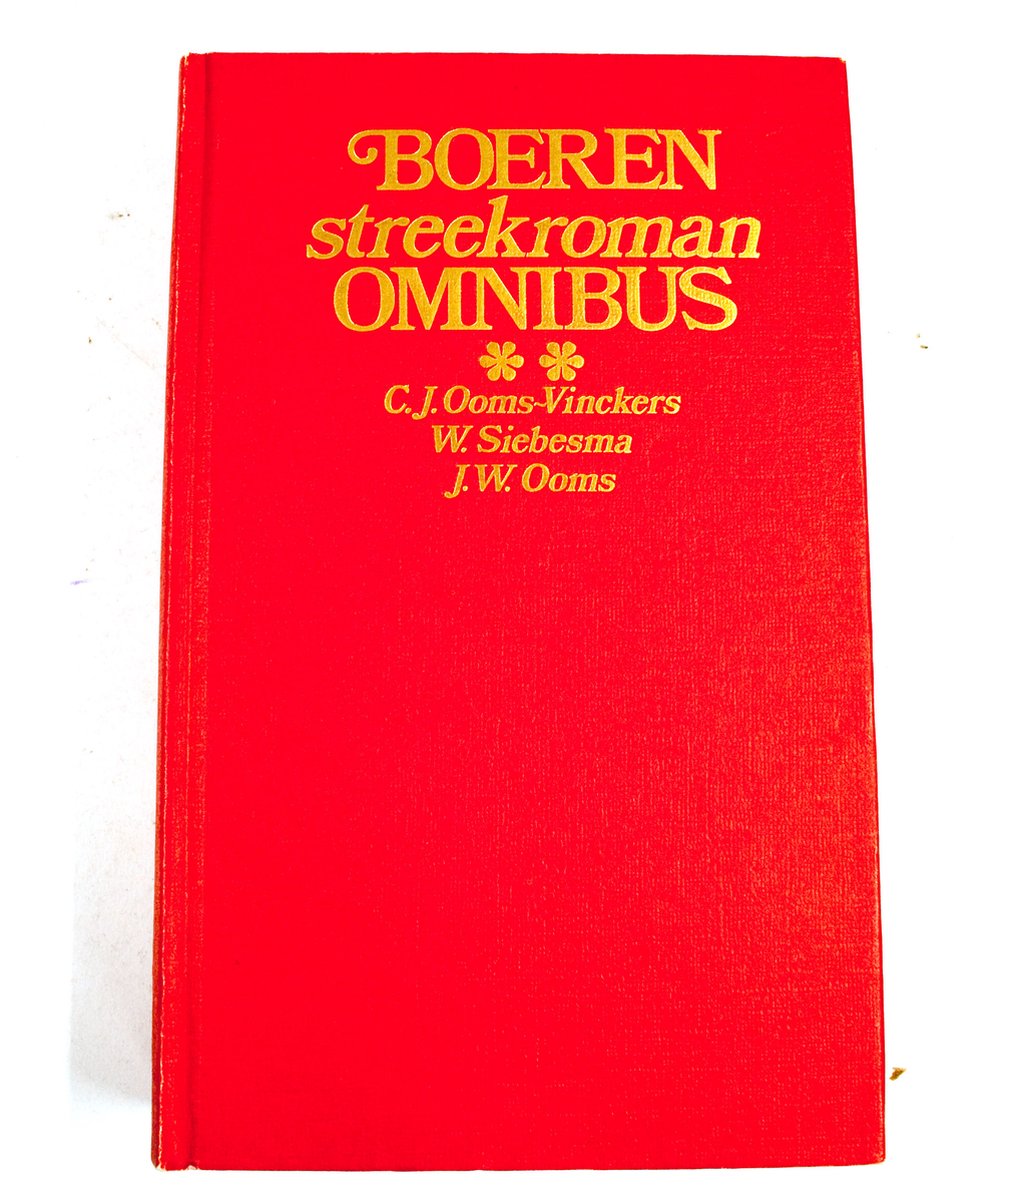 Tweede boerenstreekroman-omnibus